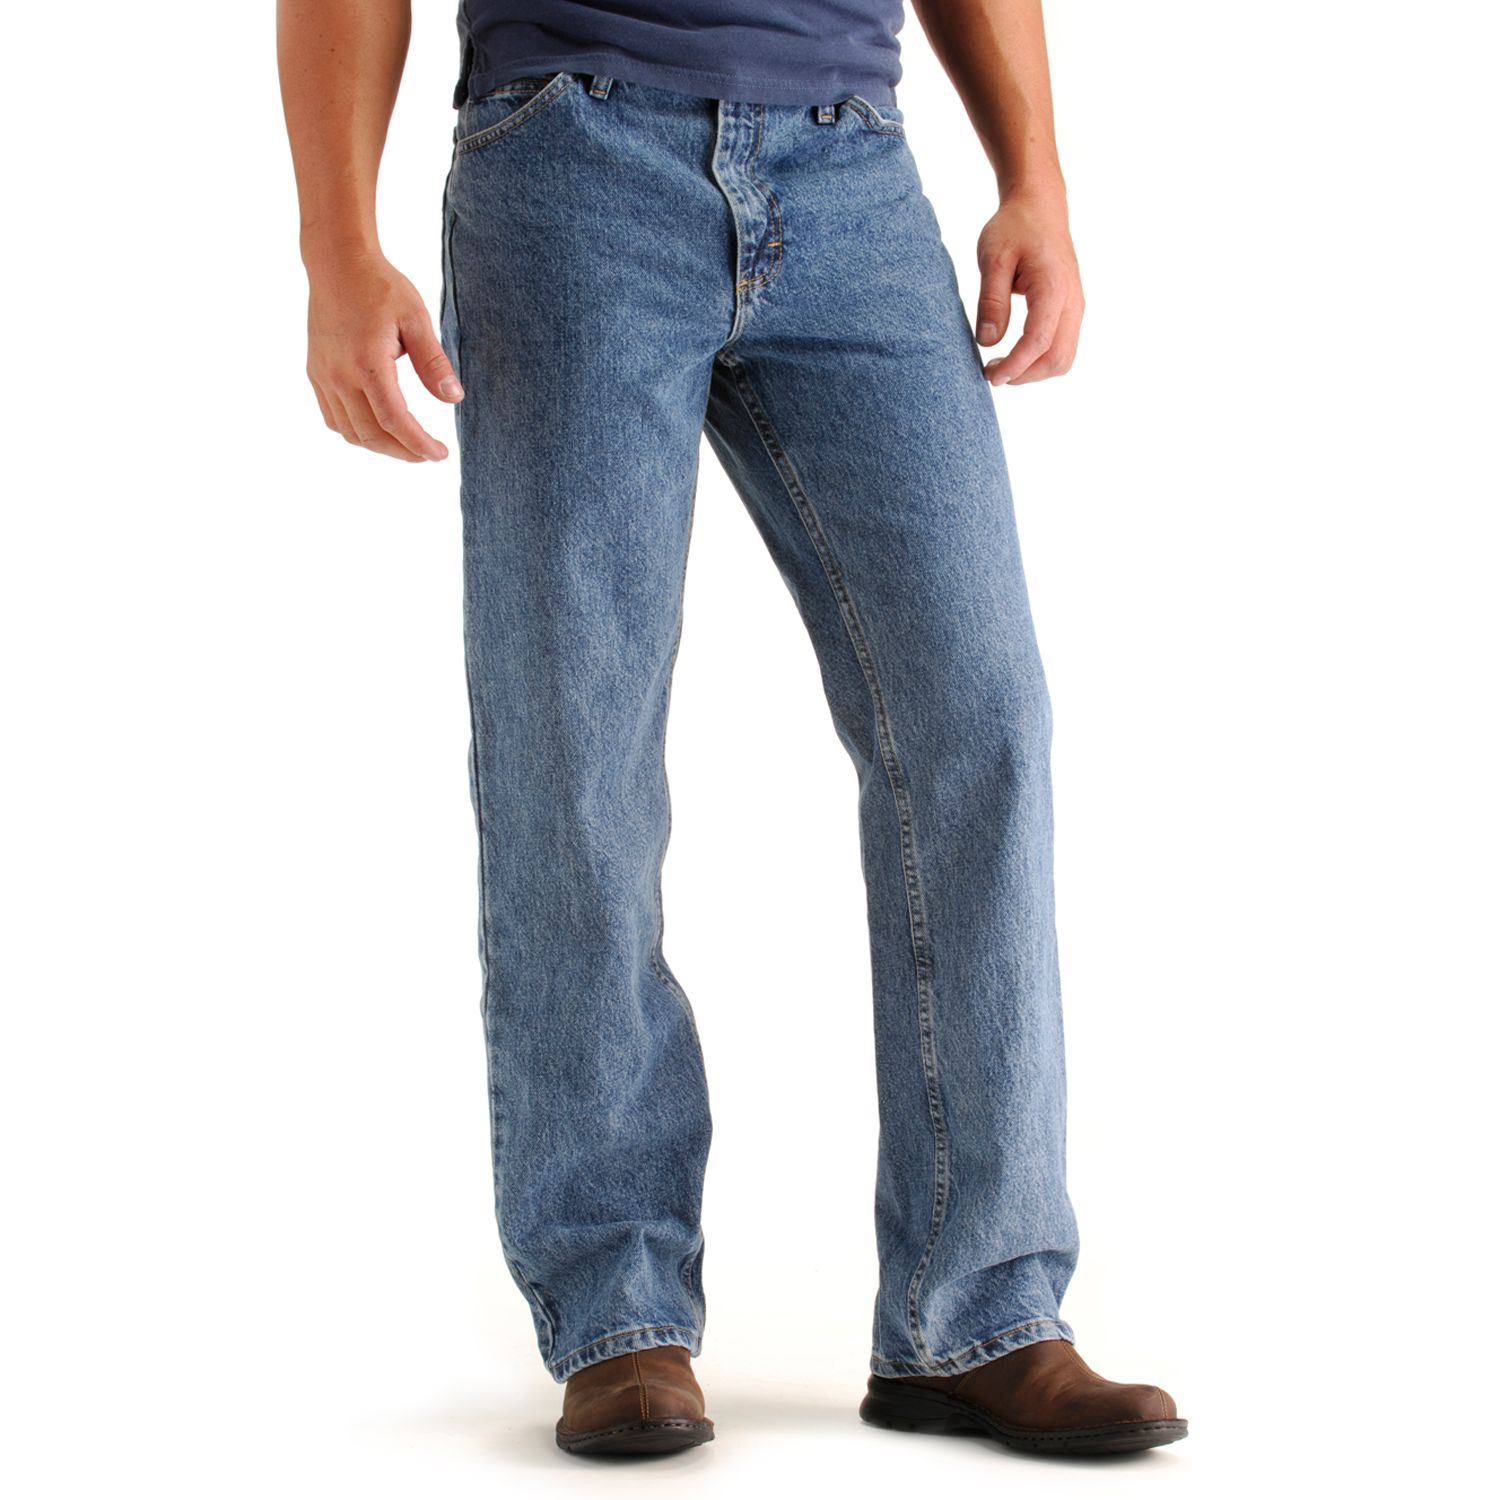 Image for Lee Men's Regular Fit Bootcut Jeans at Kohl's.